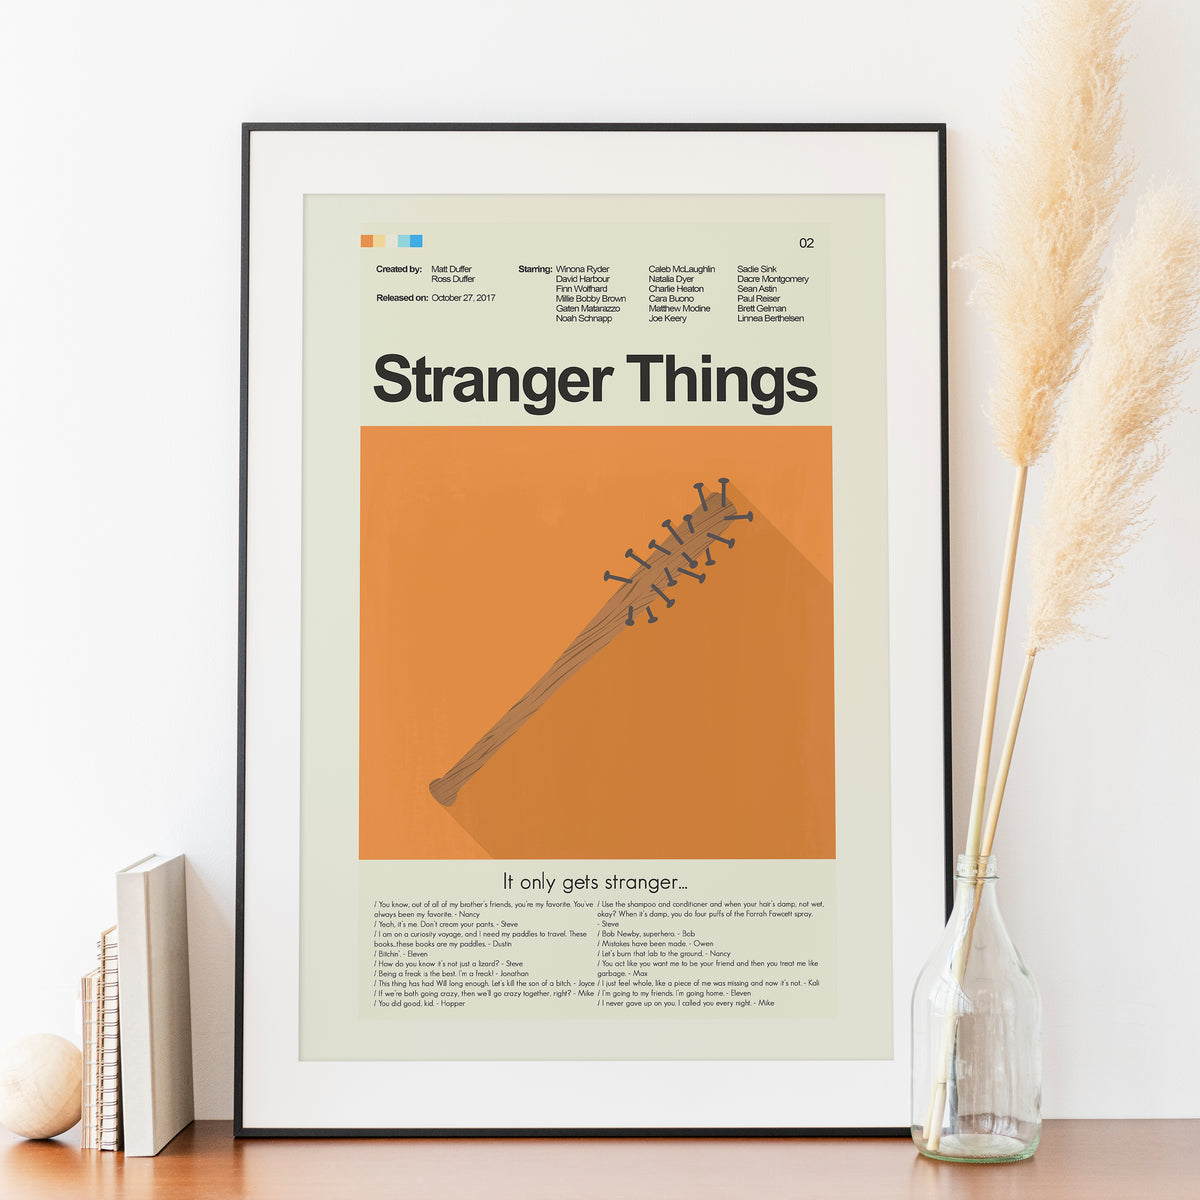 Stranger Things (Season 2) - Steve's Bat | 12"x18" Print Only